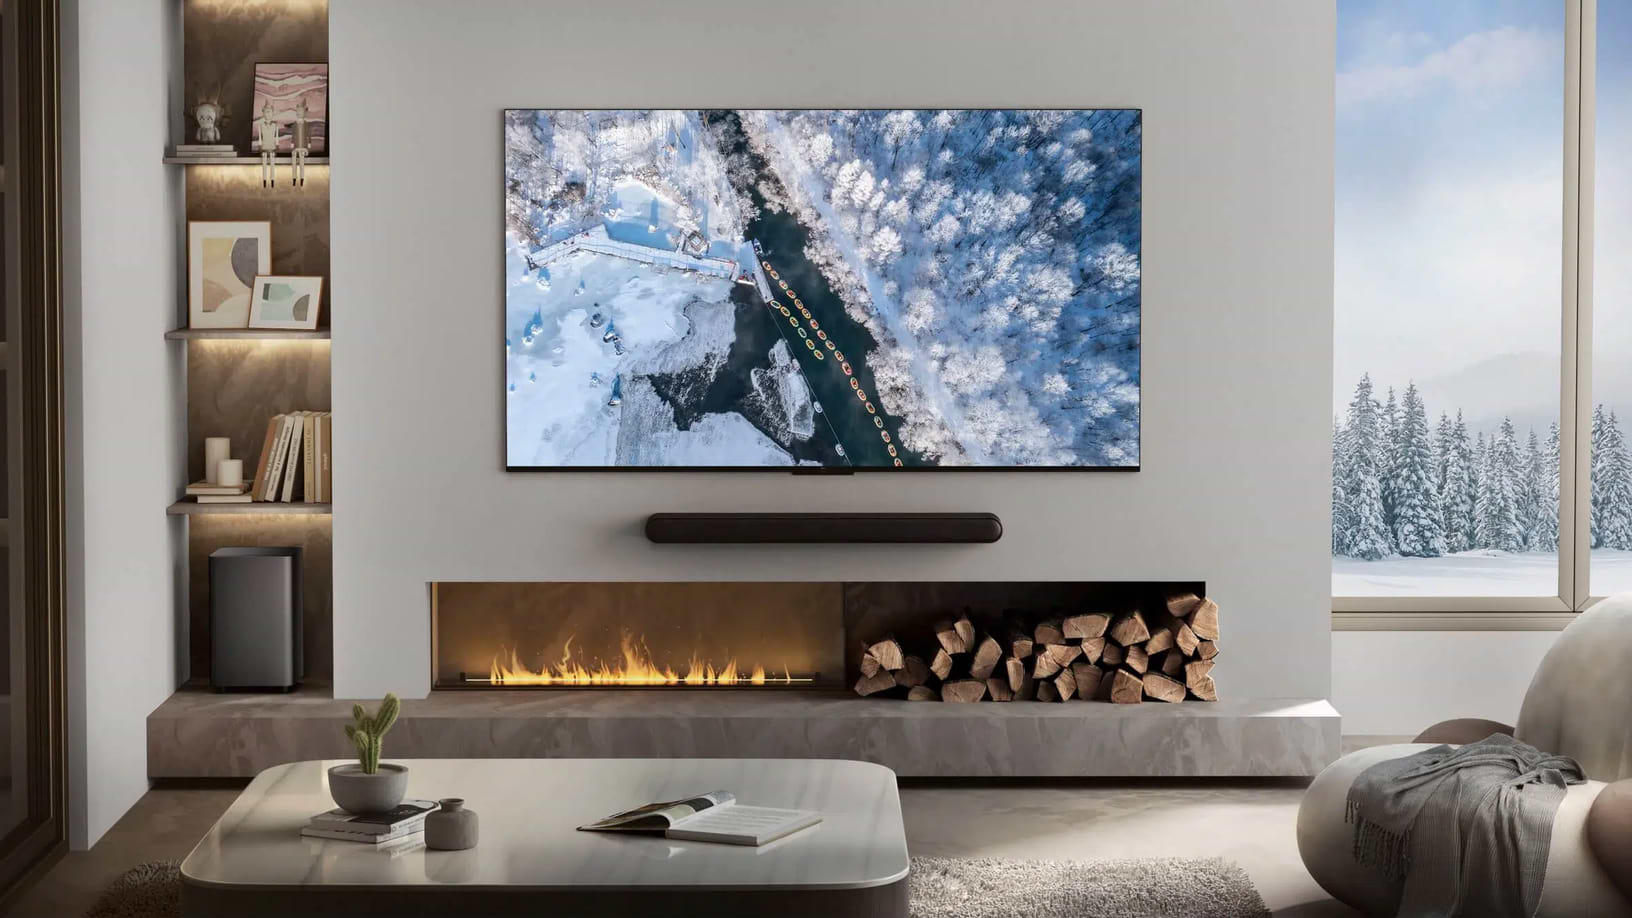 טלוויזיה חכמה 85" TCL 85V7A UHD LED 4K Google TV - אחריות ע"י אלקטרה היבואן הרשמי